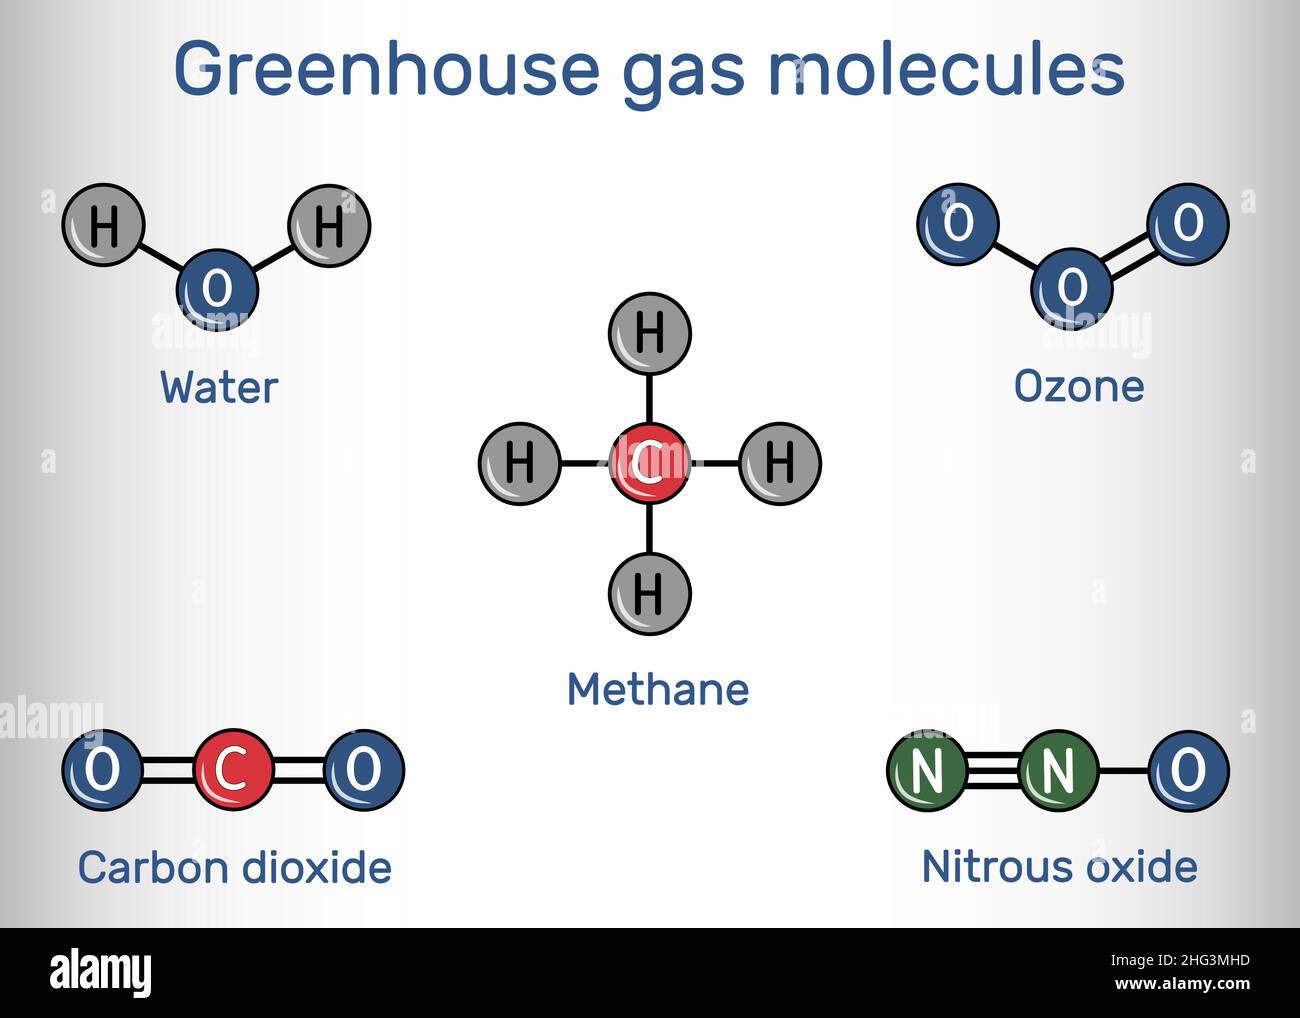 Molécules de gaz à effet de serre.Eau, dioxyde de carbone, méthane, oxyde nitreux, ozone.Formule chimique structurelle et modèle moléculaire.Illustration vectorielle Illustration de Vecteur